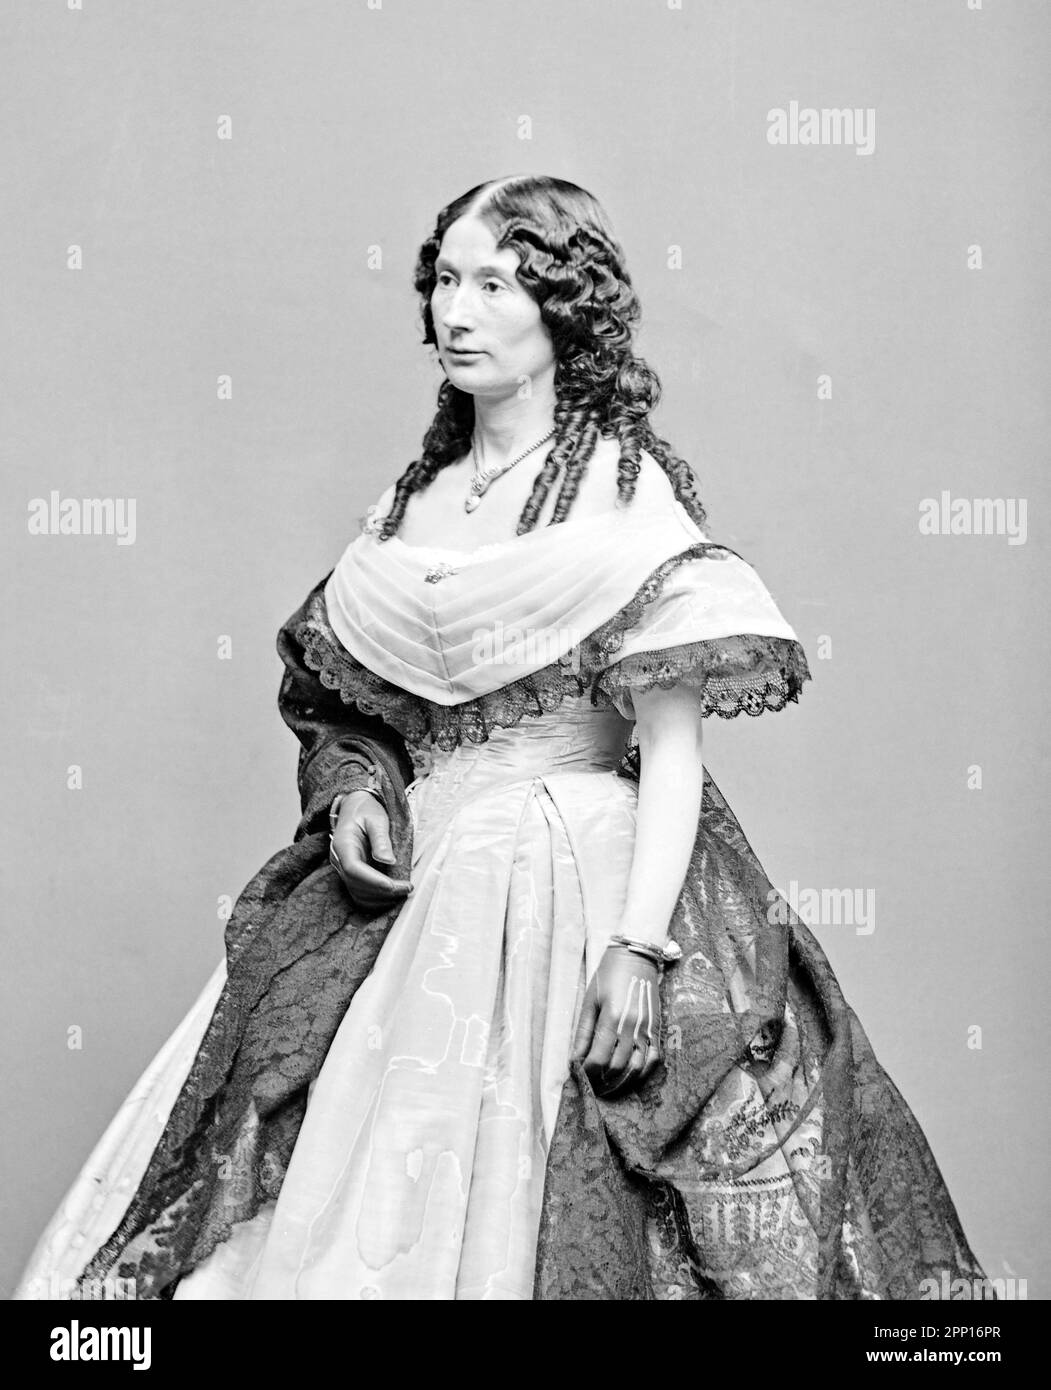 Laura Keene (1826-1873). Portrait der britischen Schauspielerin und Theatermanagerin, die berühmt ist, die Hauptdarstellerin unseres amerikanischen Cousins im Ford's Theater in Washingon DC zu sein, als Abraham Lincoln ermordet wurde. Stockfoto